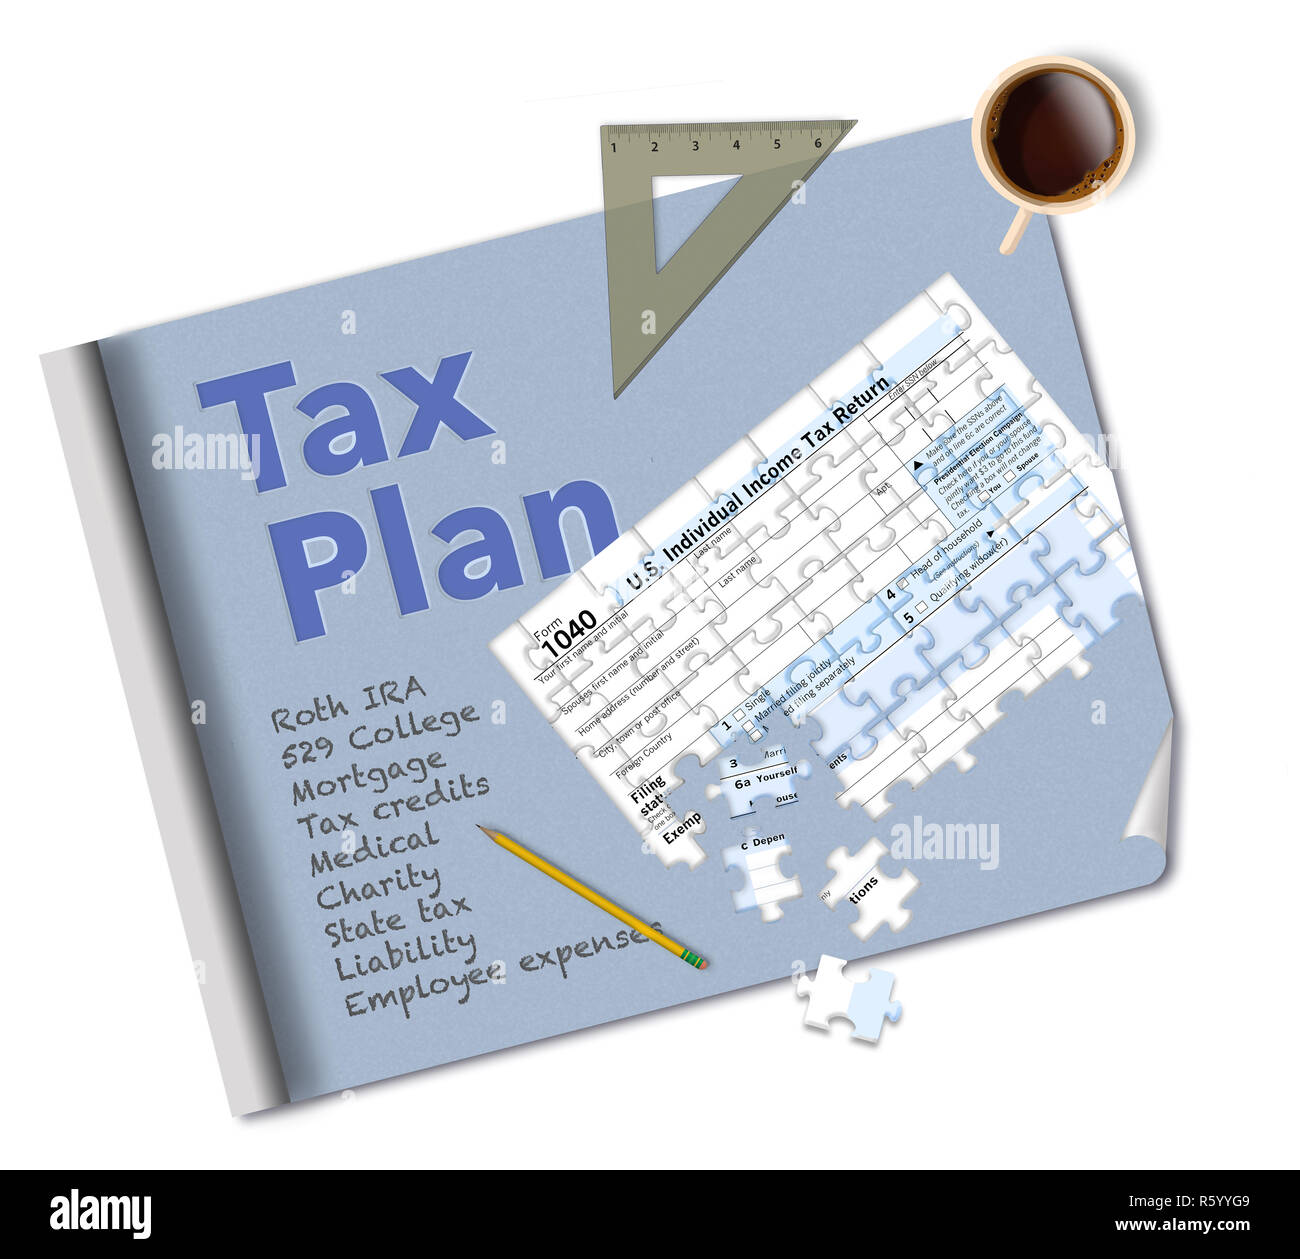 Ein bauplan und ein Steuerformular 1040, dass ist ein Puzzle machen diese Abbildung über Einkommensteuer Planung. Dies ist eine Abbildung. Stockfoto